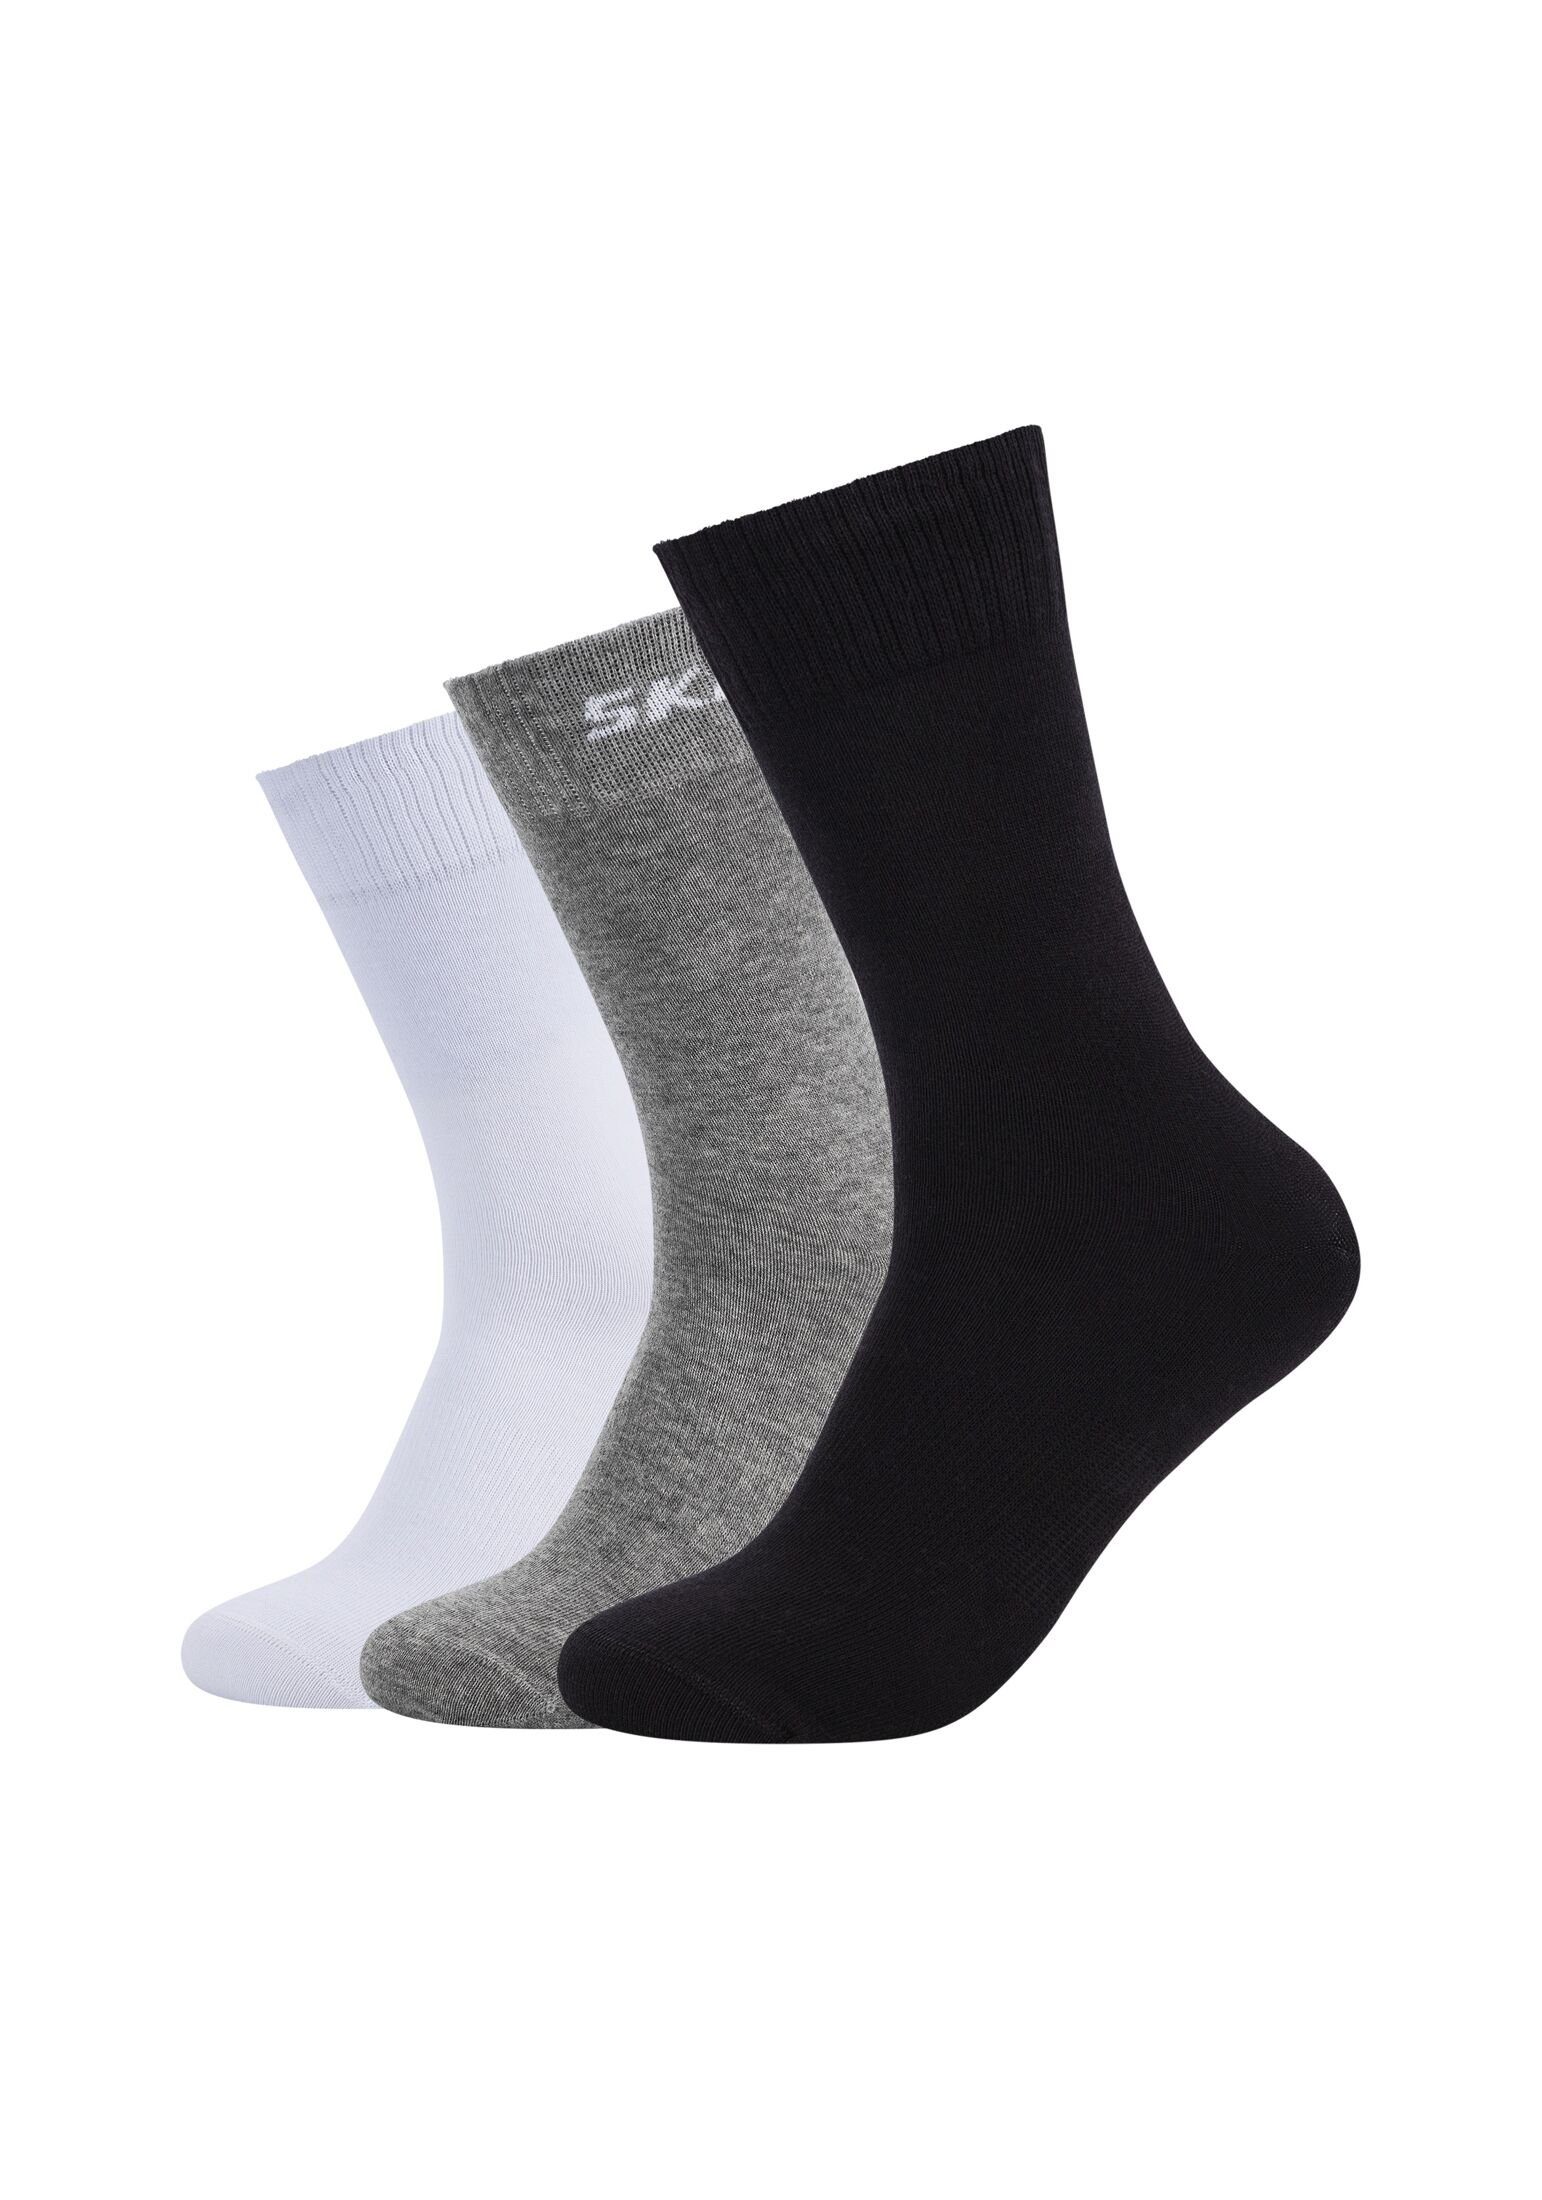 black/grey 6er Pack Skechers Socken Socken mix